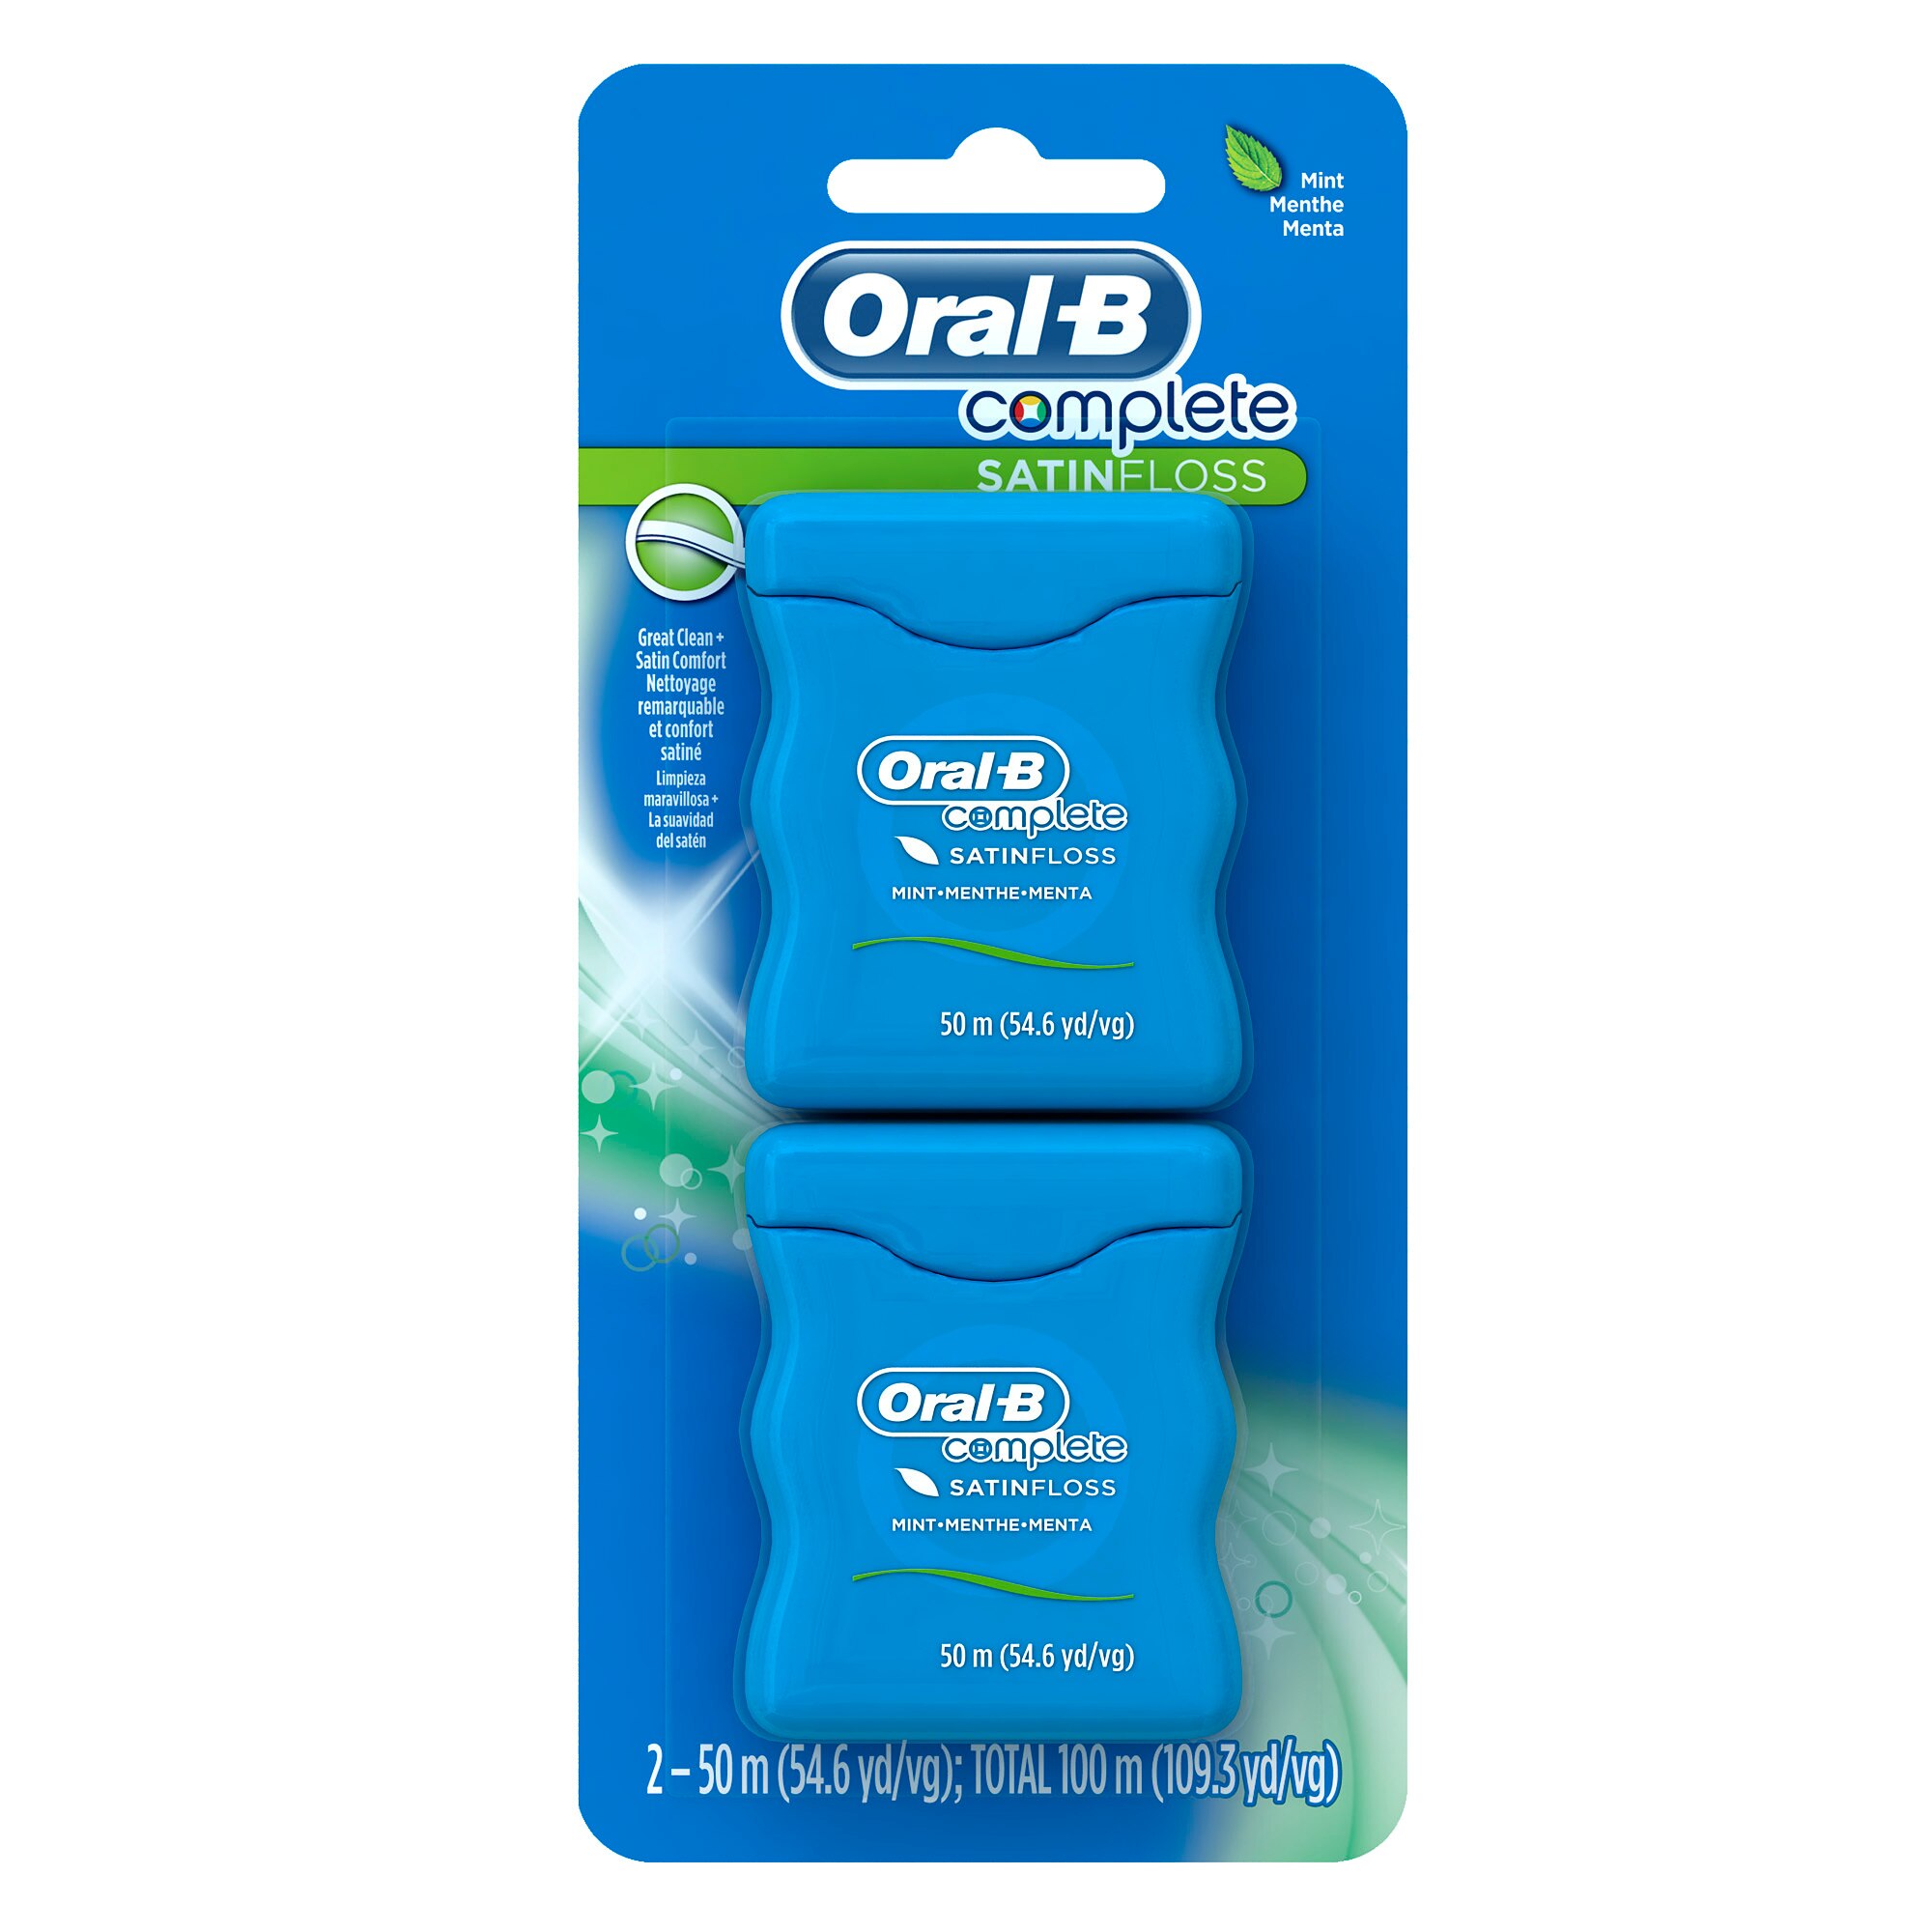 Oral-B Complete Satin Dental Floss, Mint, 50 M, 2 Pack - 109.3 Yd , CVS